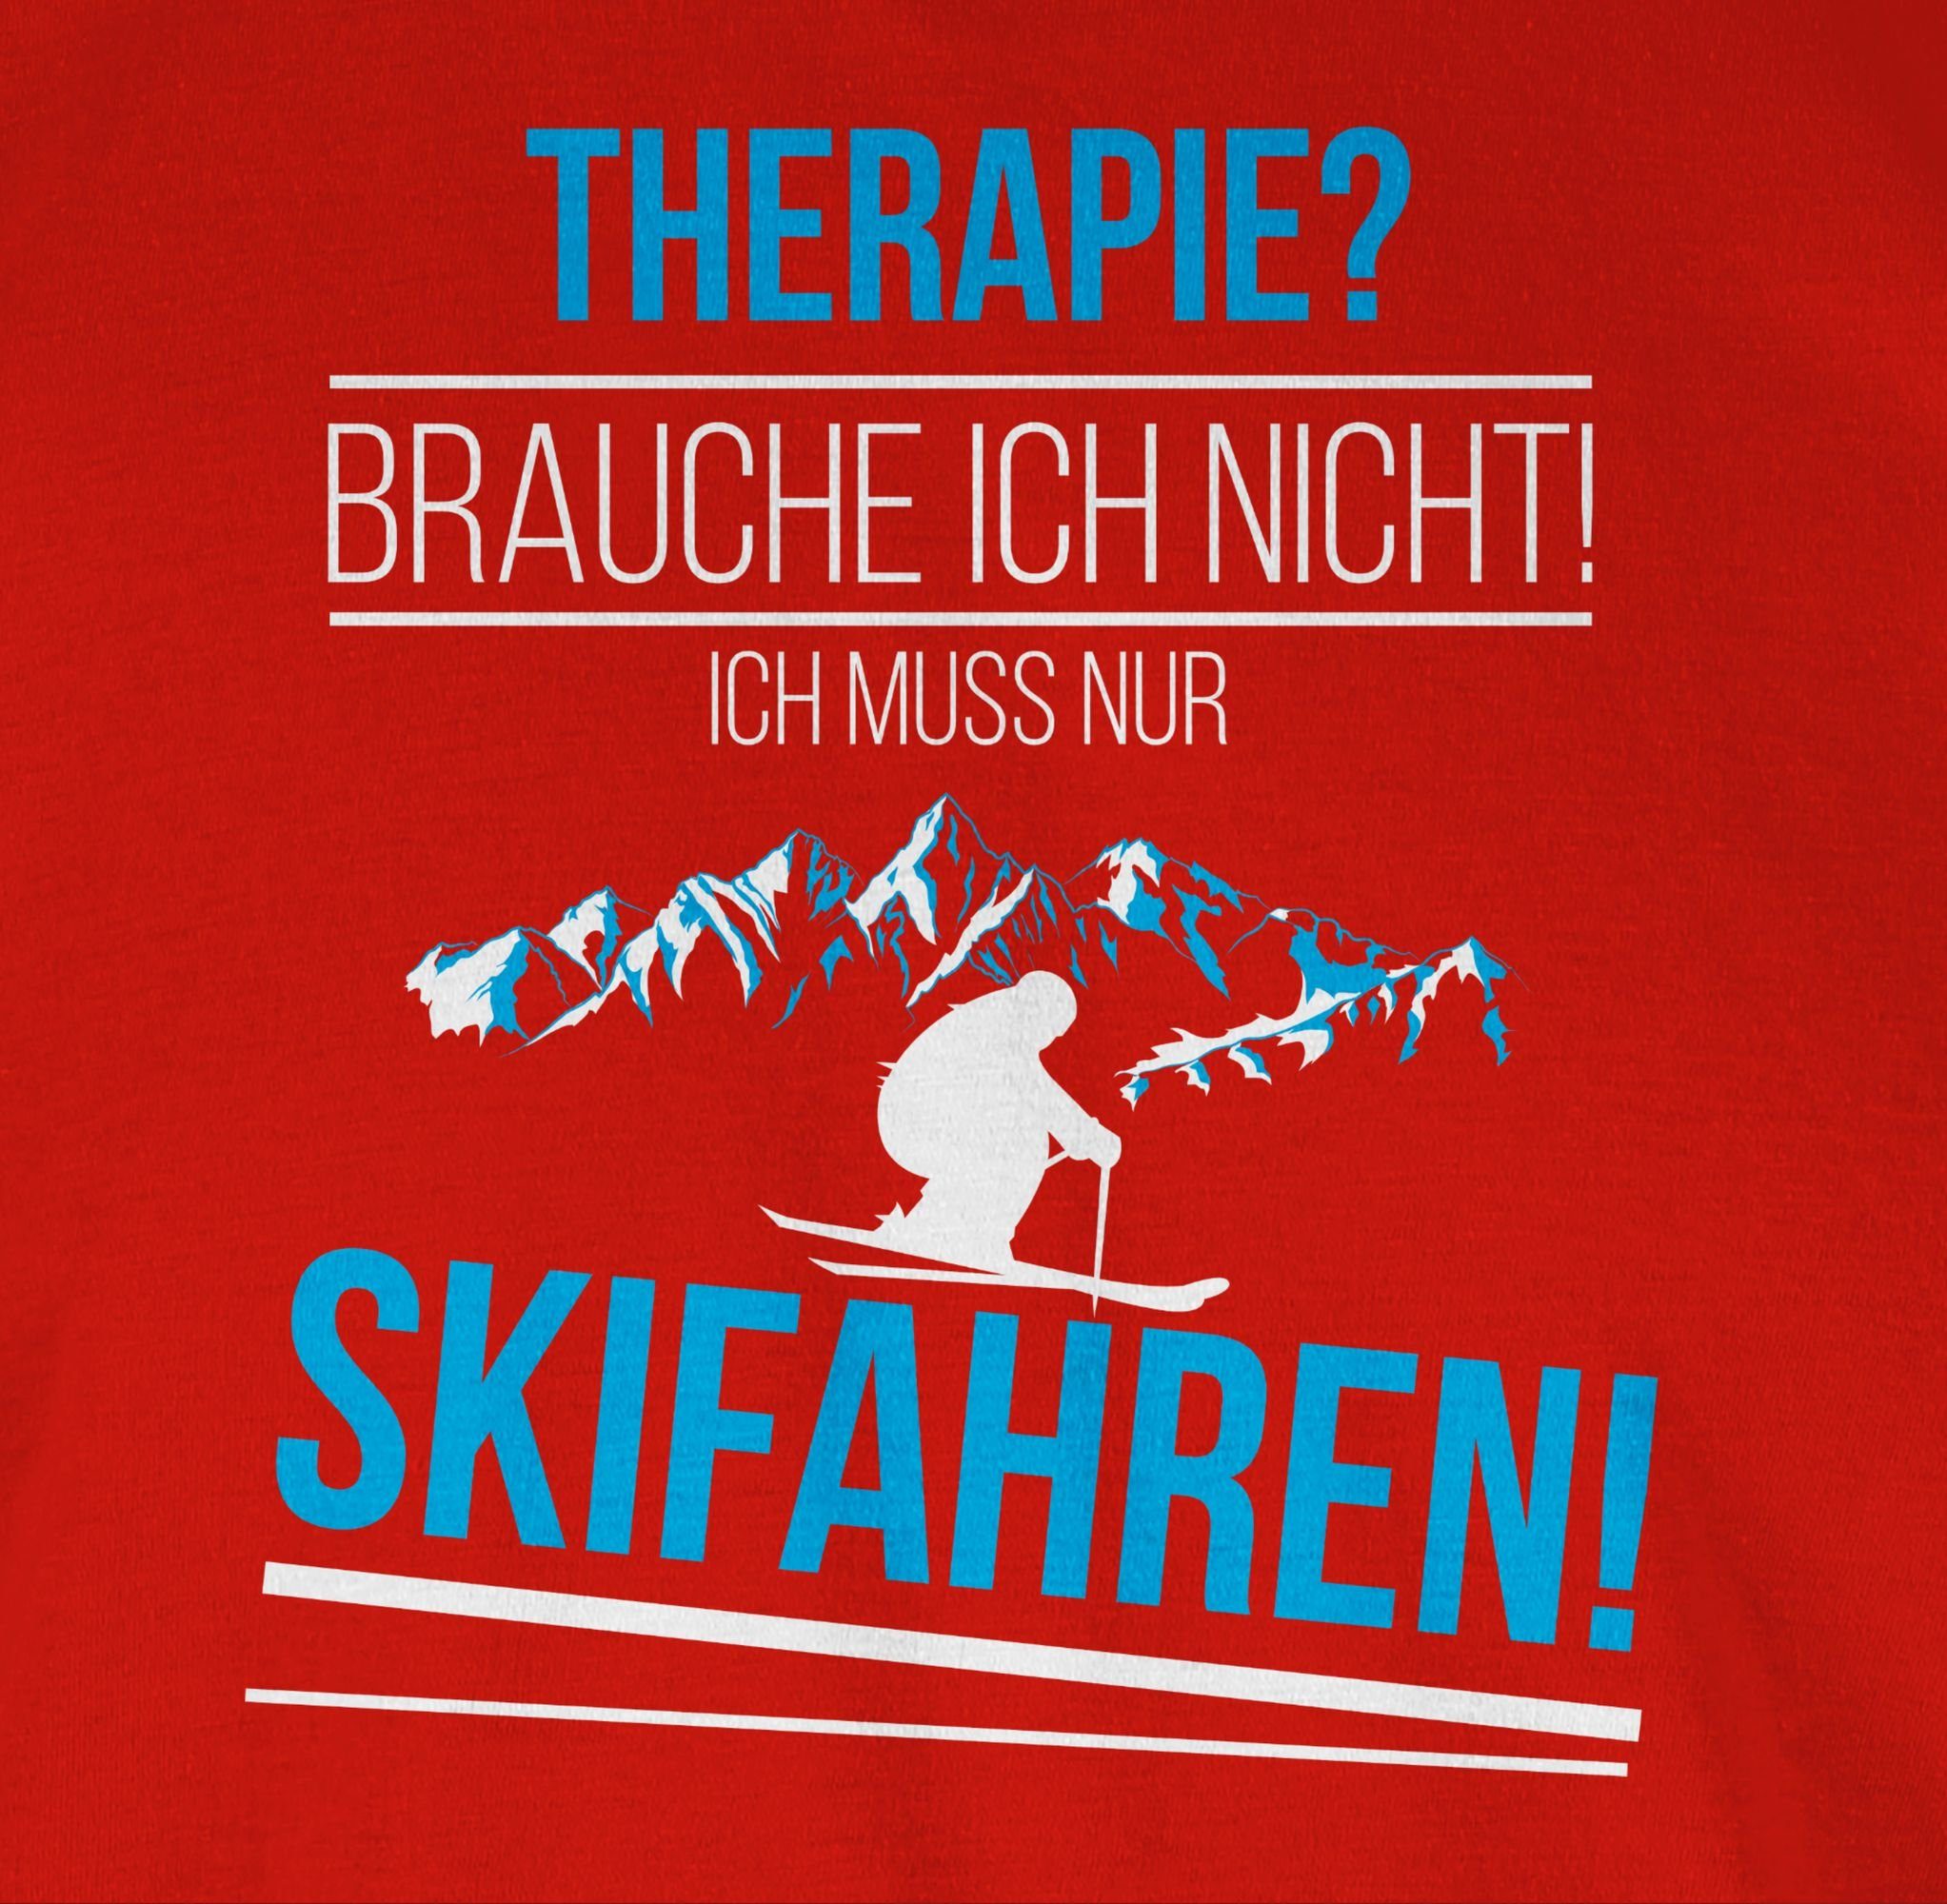 Shirtracer T-Shirt Therapie? mehr Brauch Rot Skifahren! Snowboard, Ski ich und 3 nicht